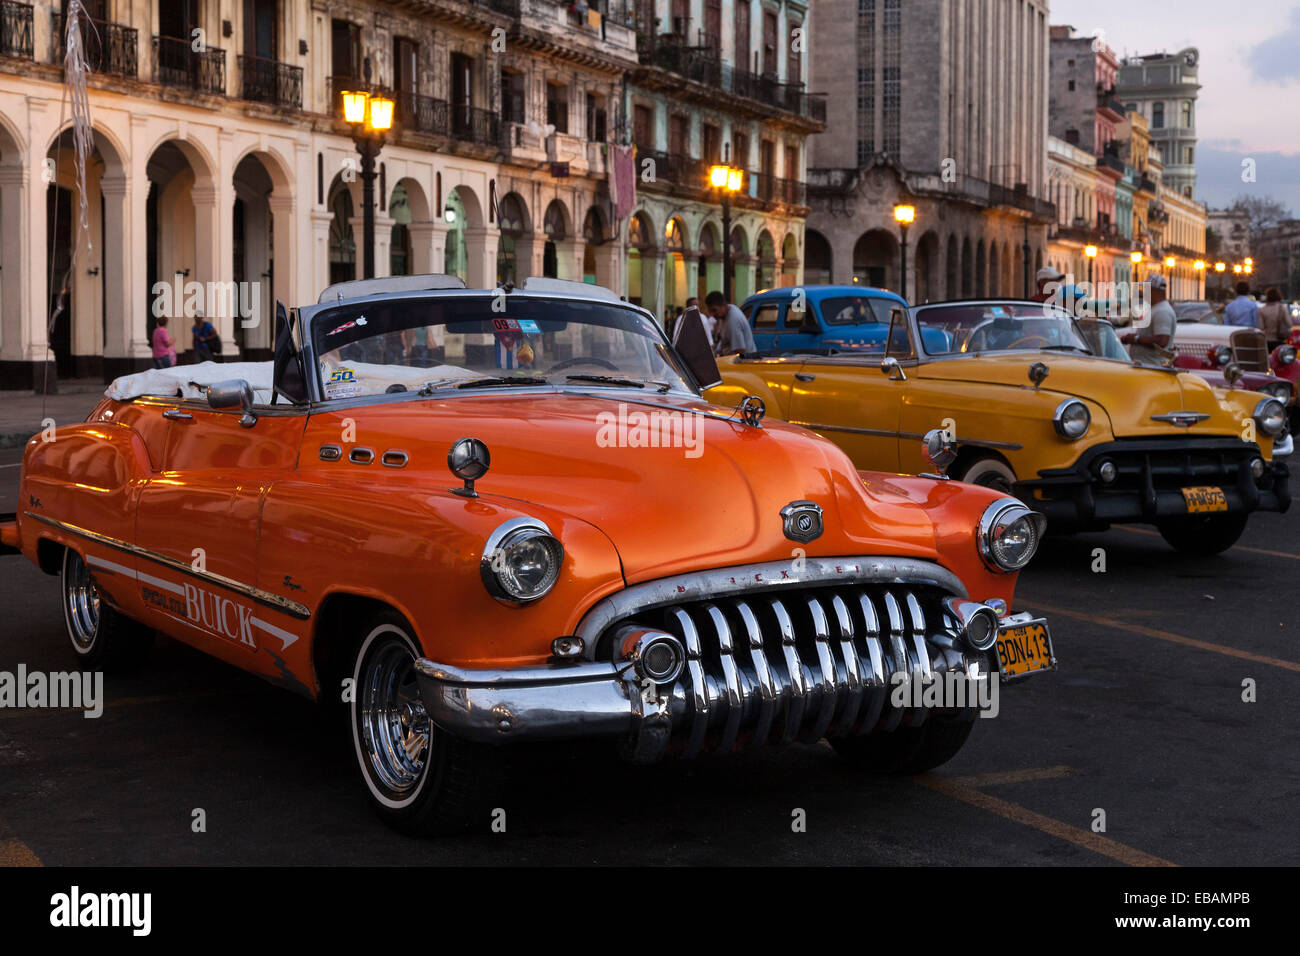 Voitures anciennes sur le Prado au crépuscule, à l'avant une Buick depuis les années 1950, La Havane, Cuba Banque D'Images